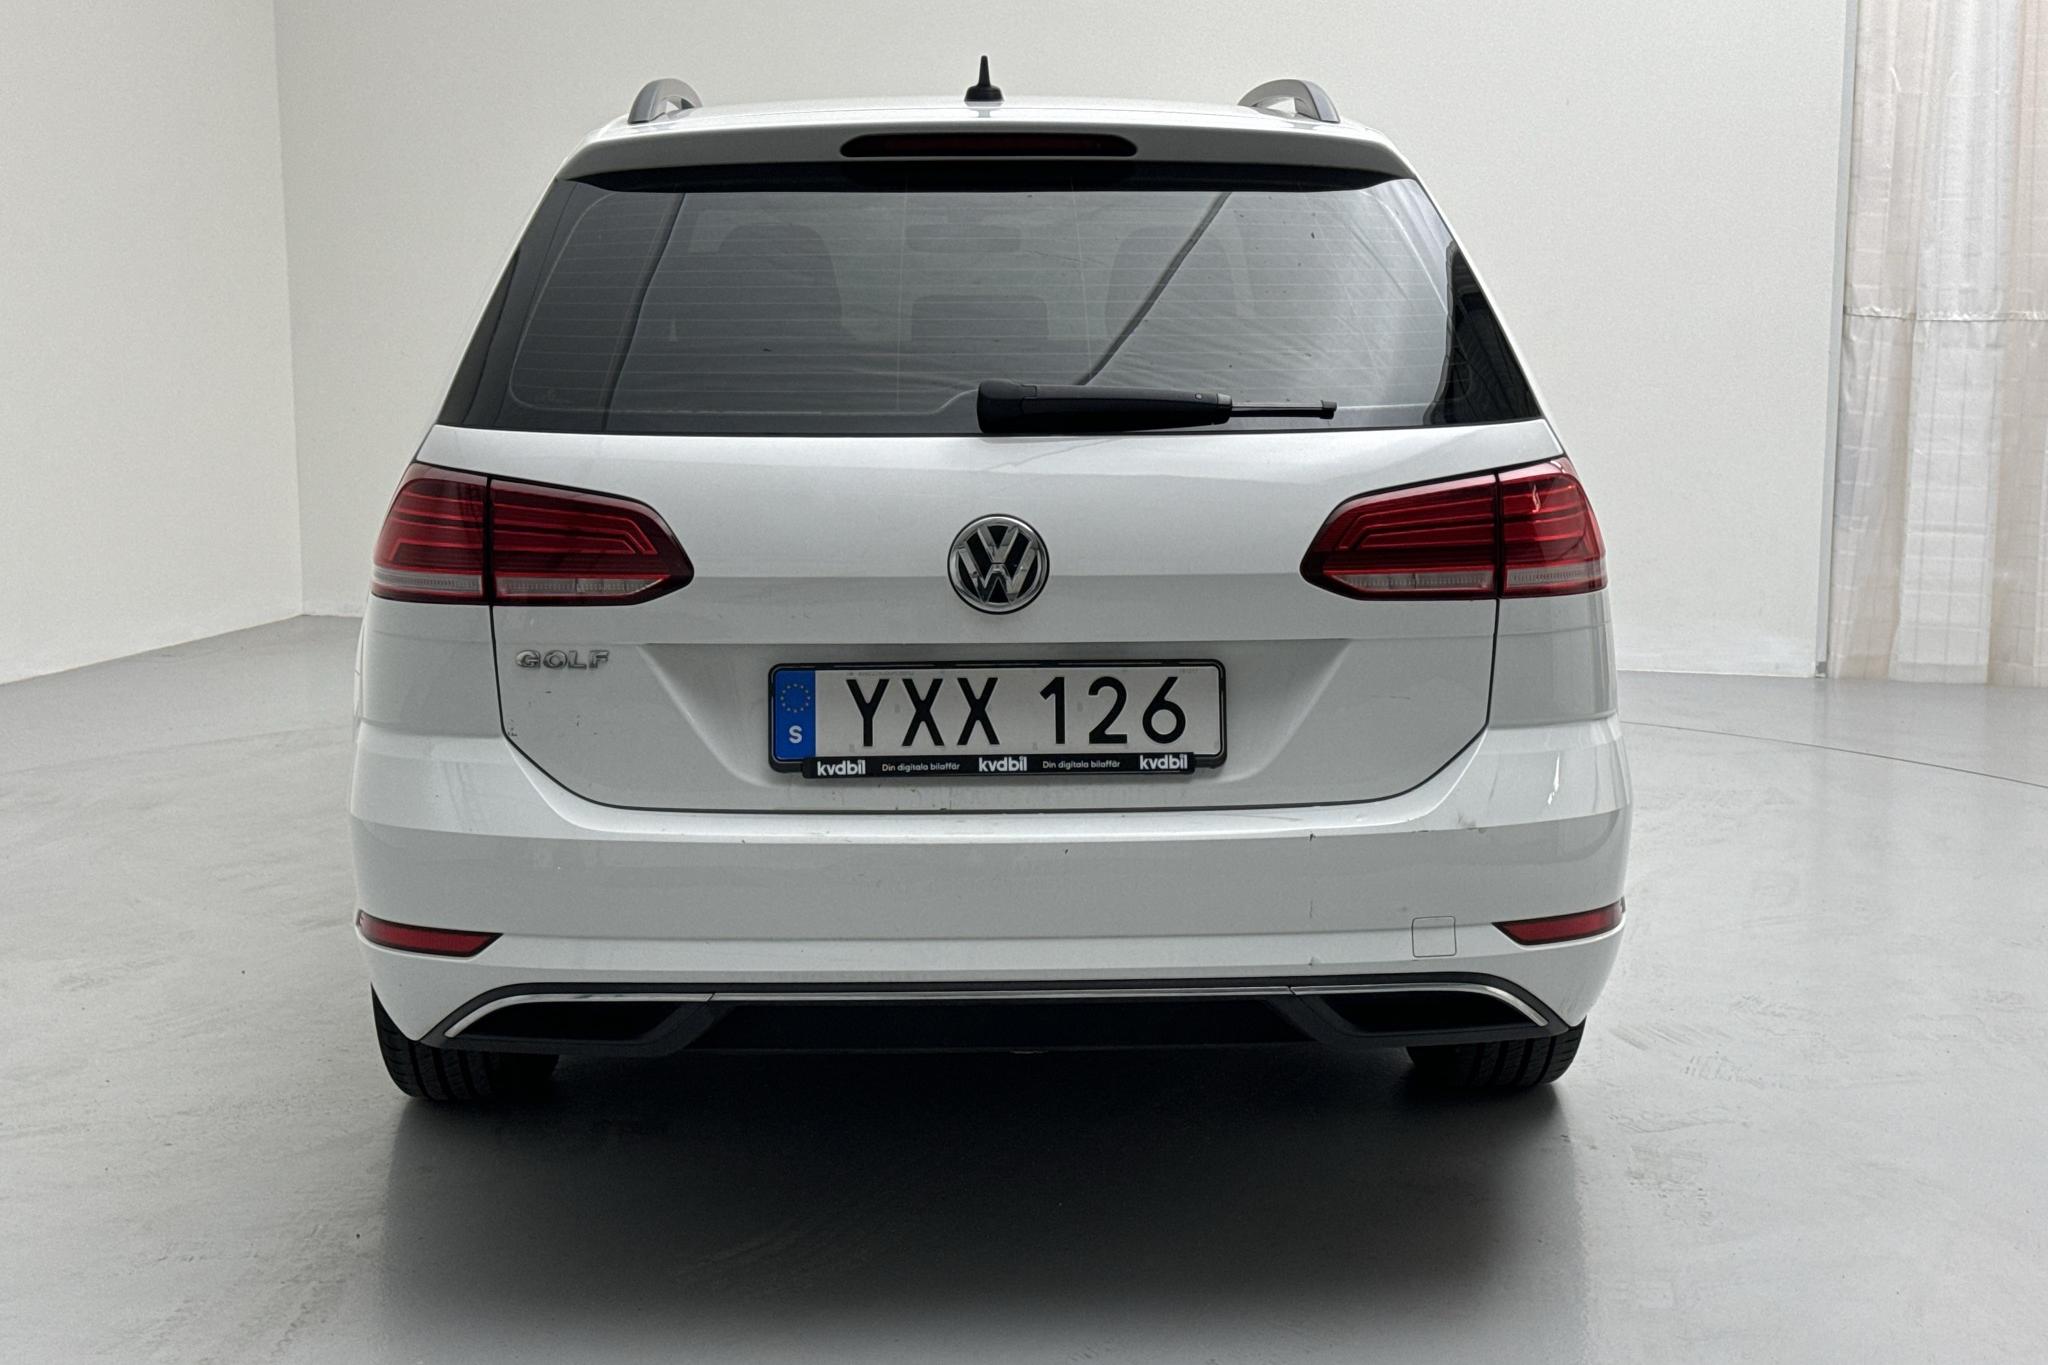 VW Golf VII 1.6 TDI Sportscombi (115hk) - 137 930 km - Automaattinen - valkoinen - 2019